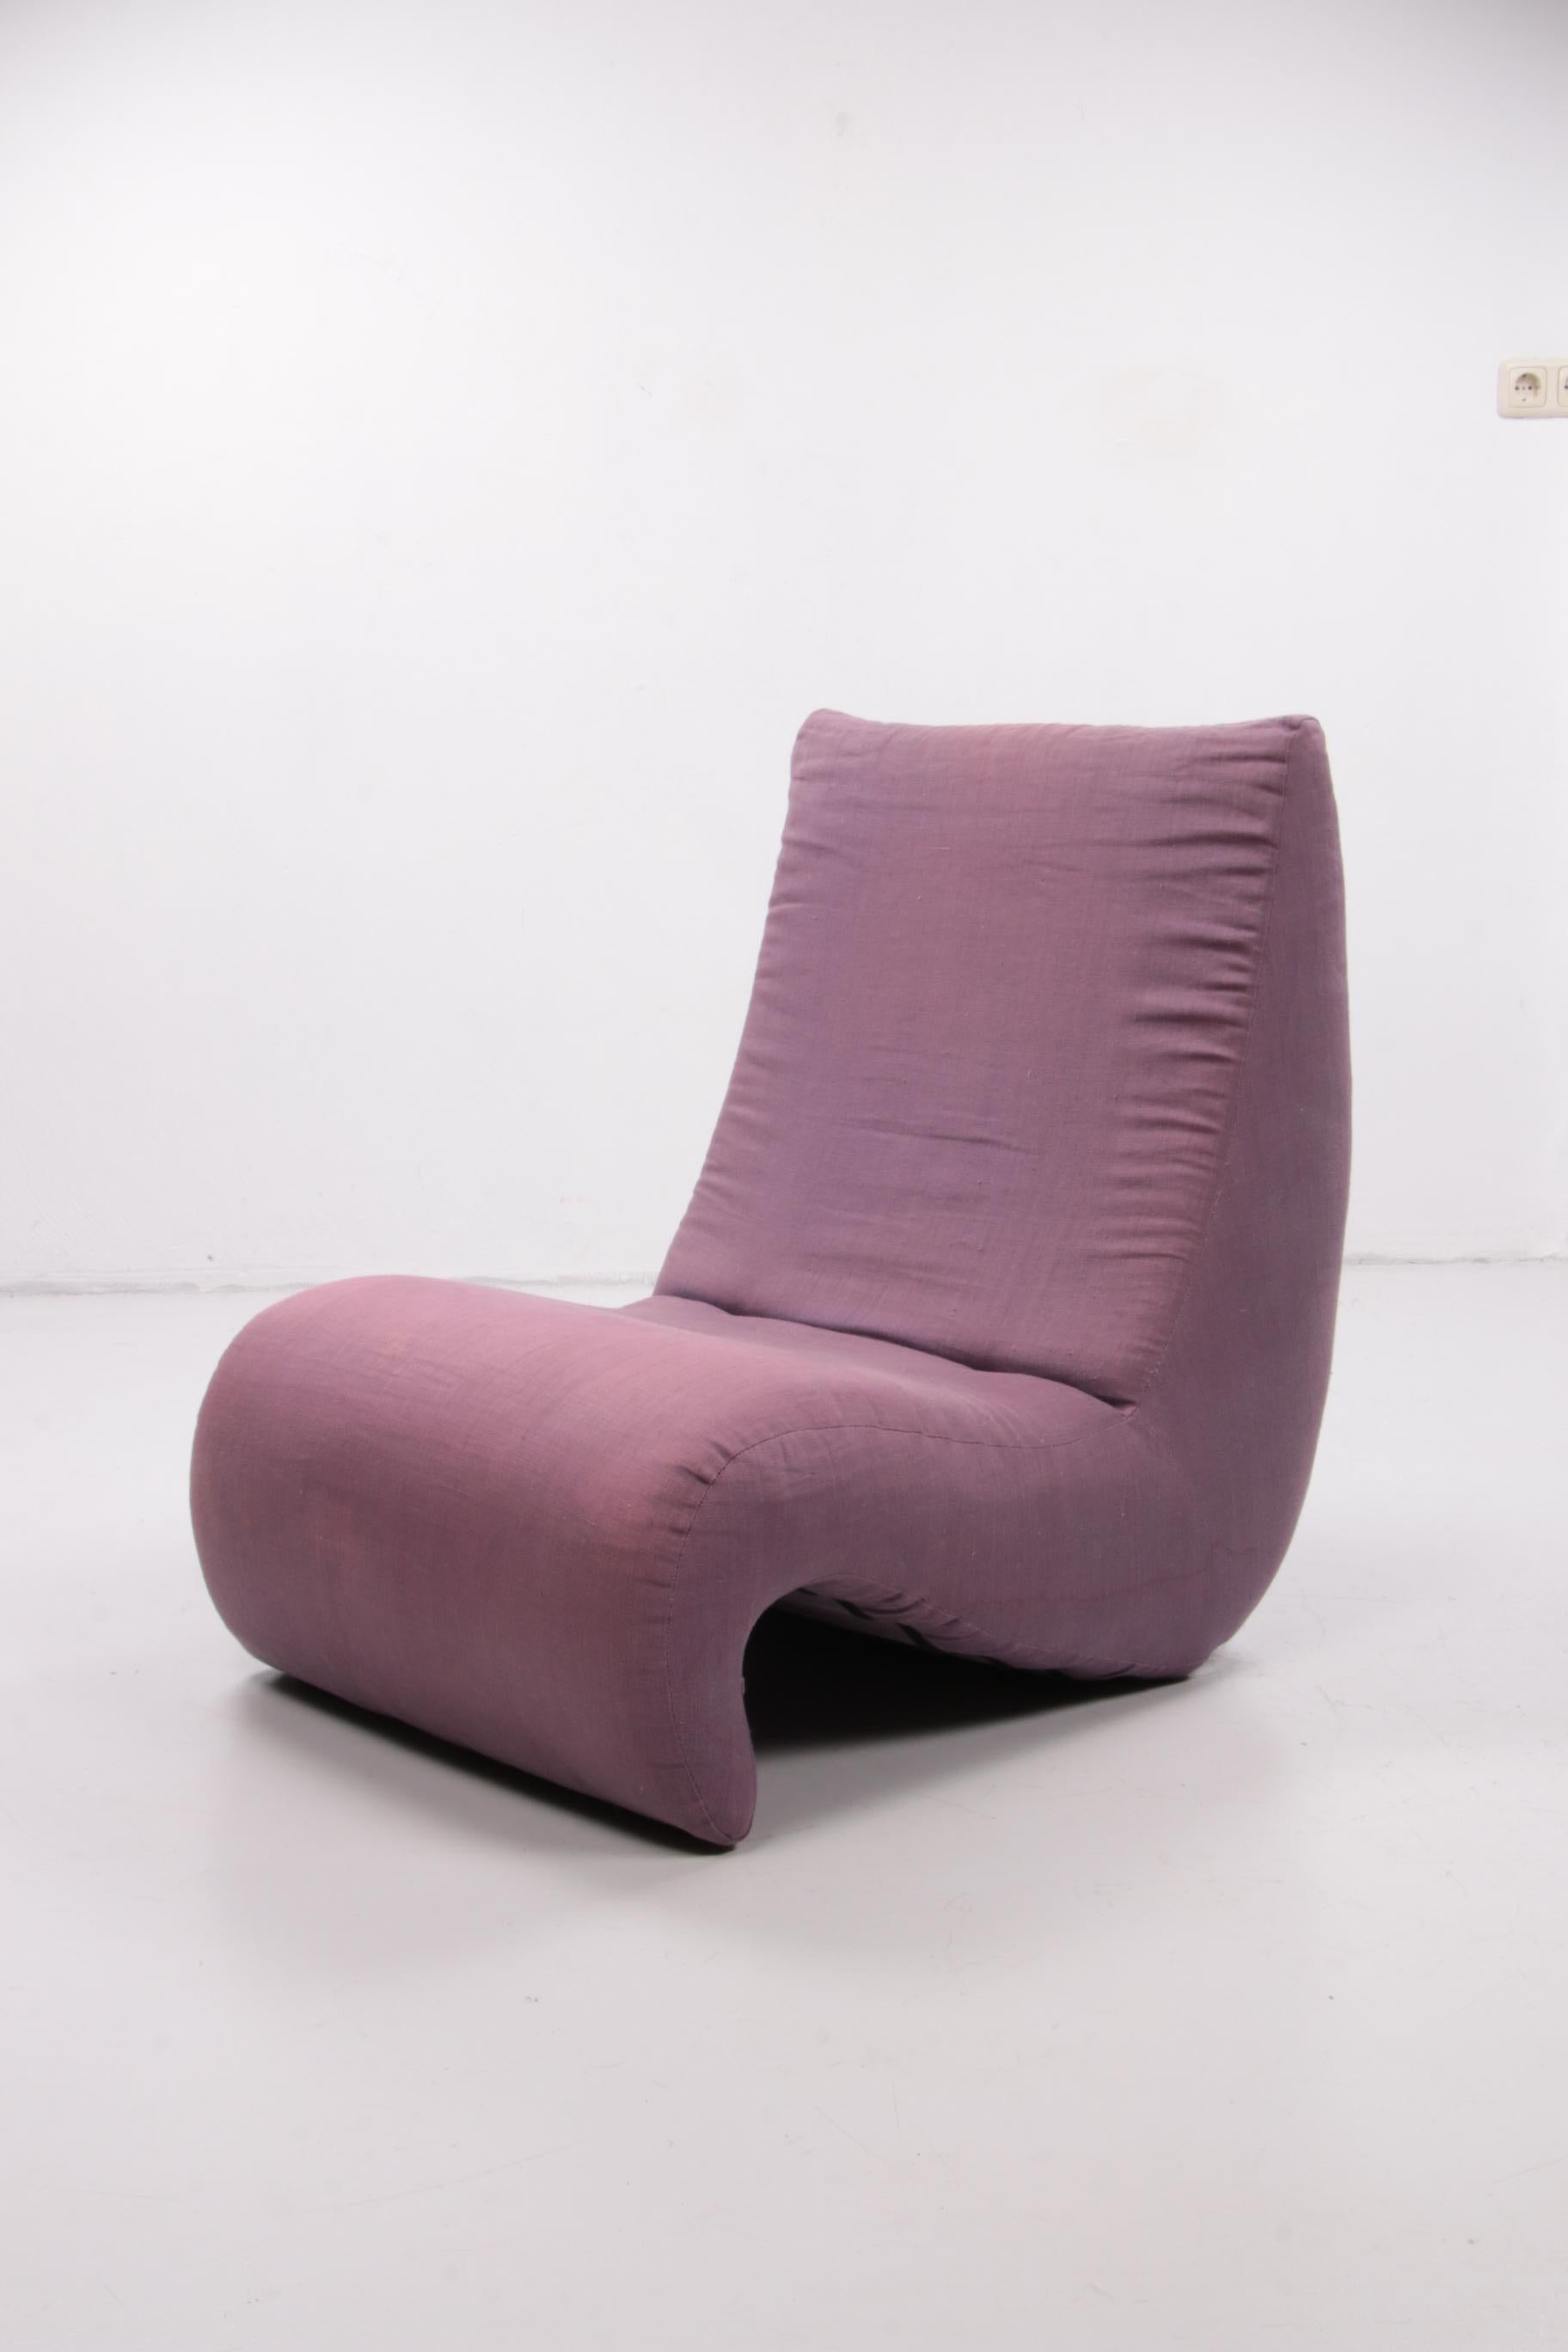 Foam Vintage Relax Armchair Design by Verner Panton Model Amoebe 1970